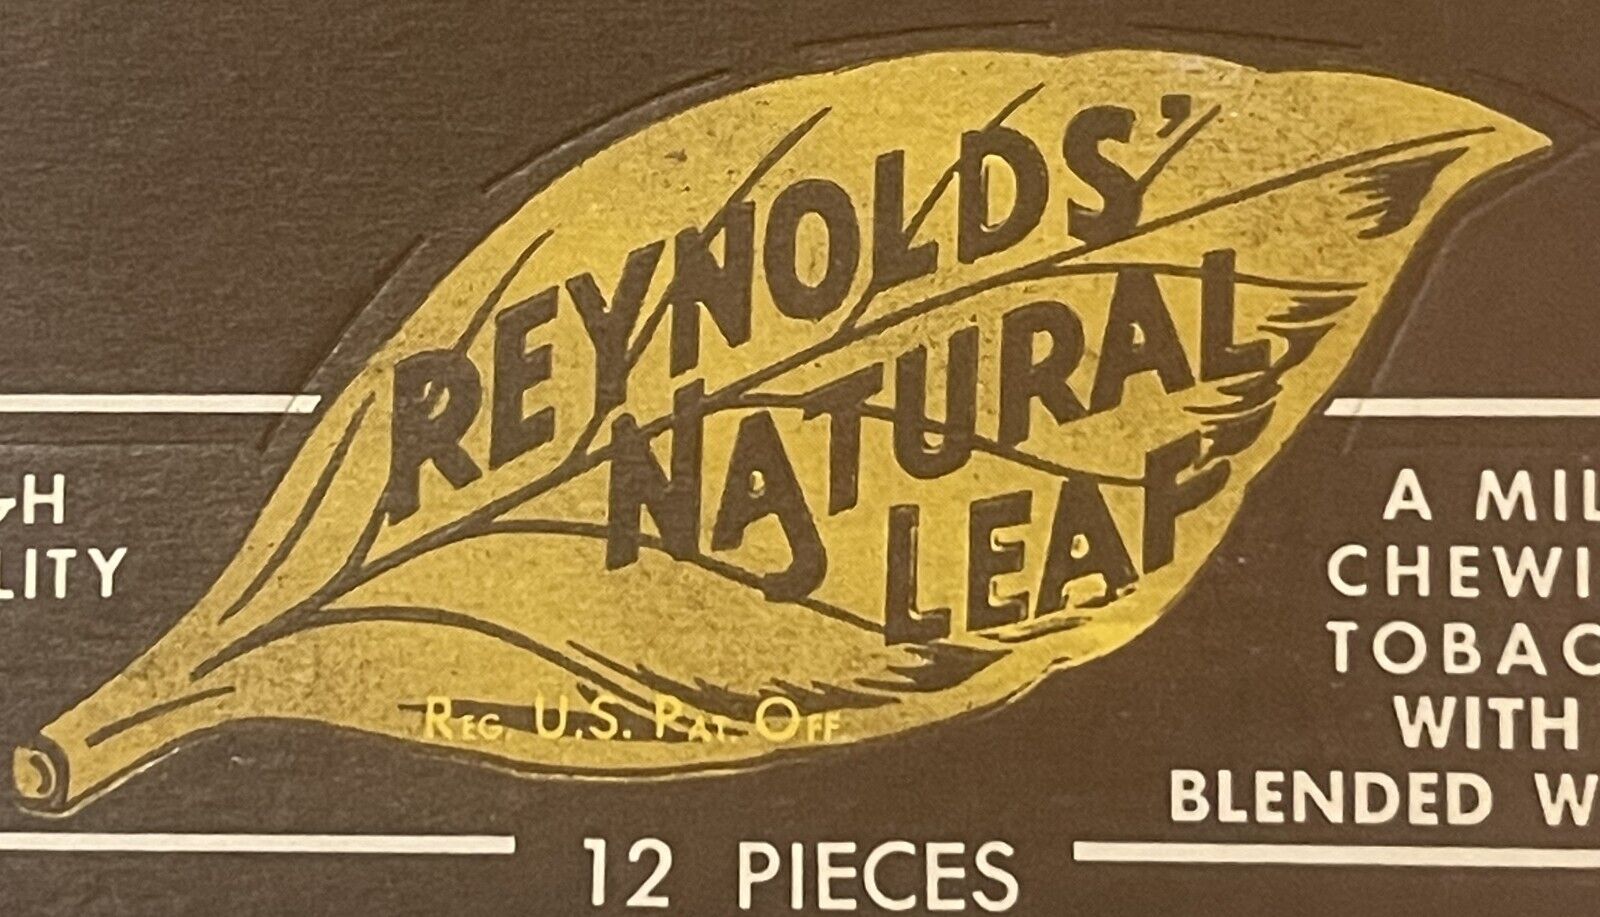 Rare Vintage 1970s Reynolds Natural Leaf 🍃 Tobacco Box, Winston - Salem, NC